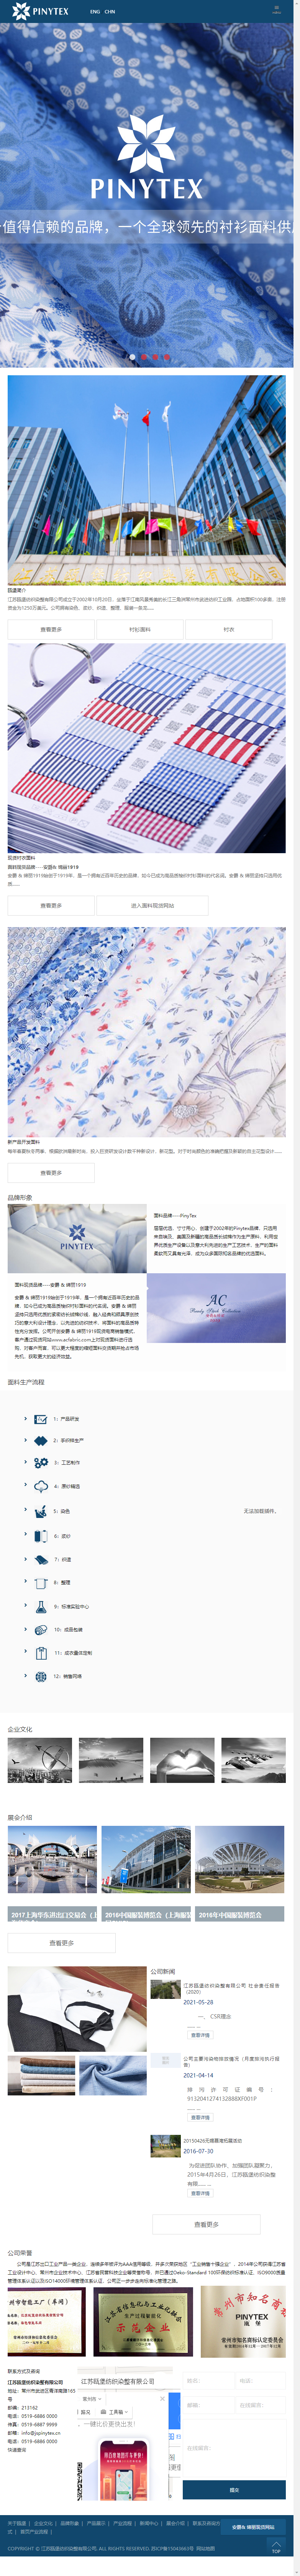 江苏瓯堡纺织染整有限公司网站案例